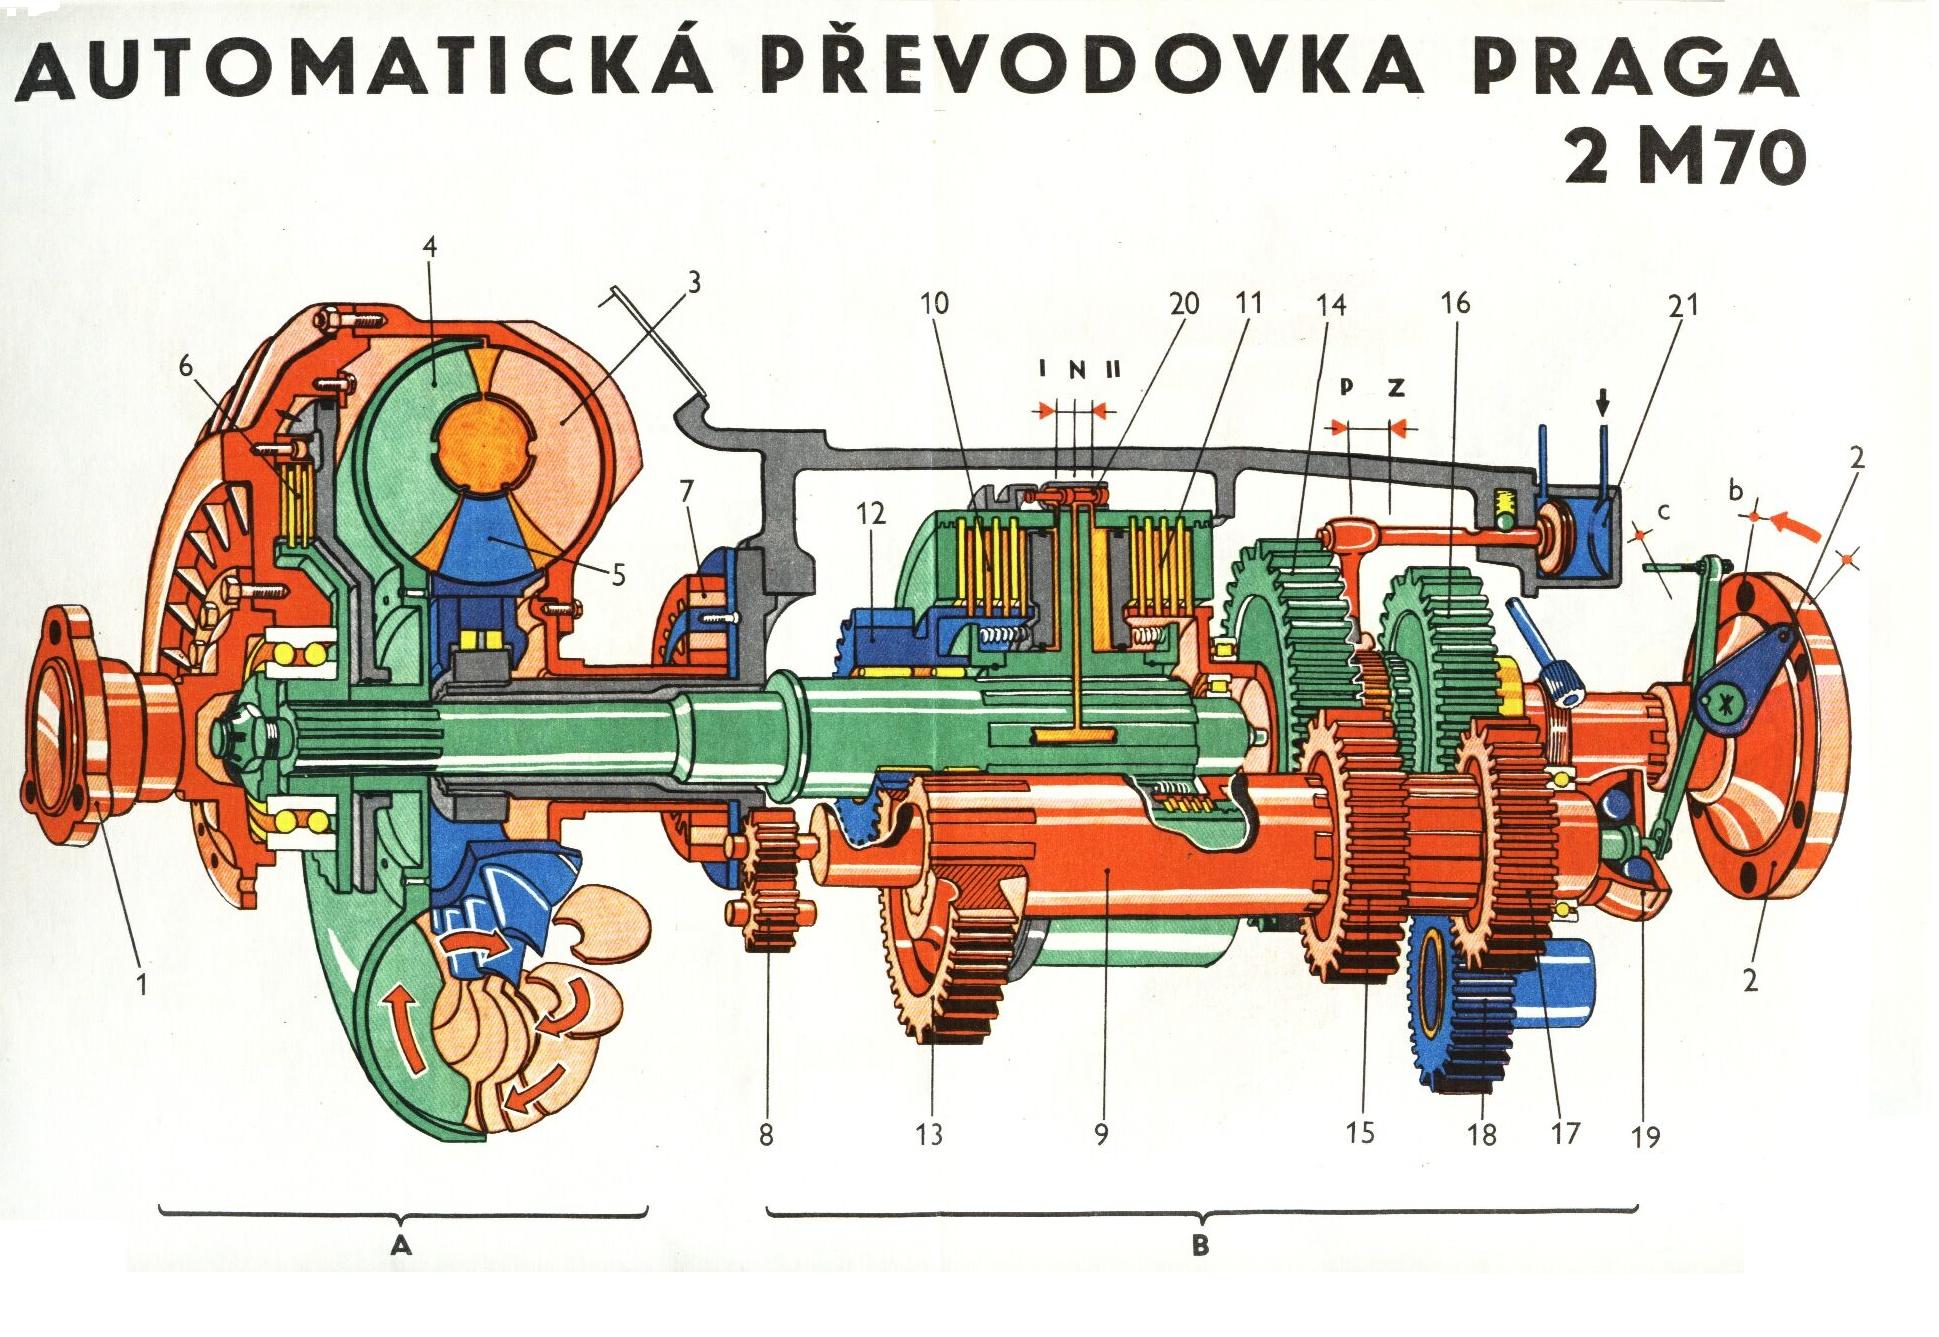 Automatická převodovka Praga 2 M70 